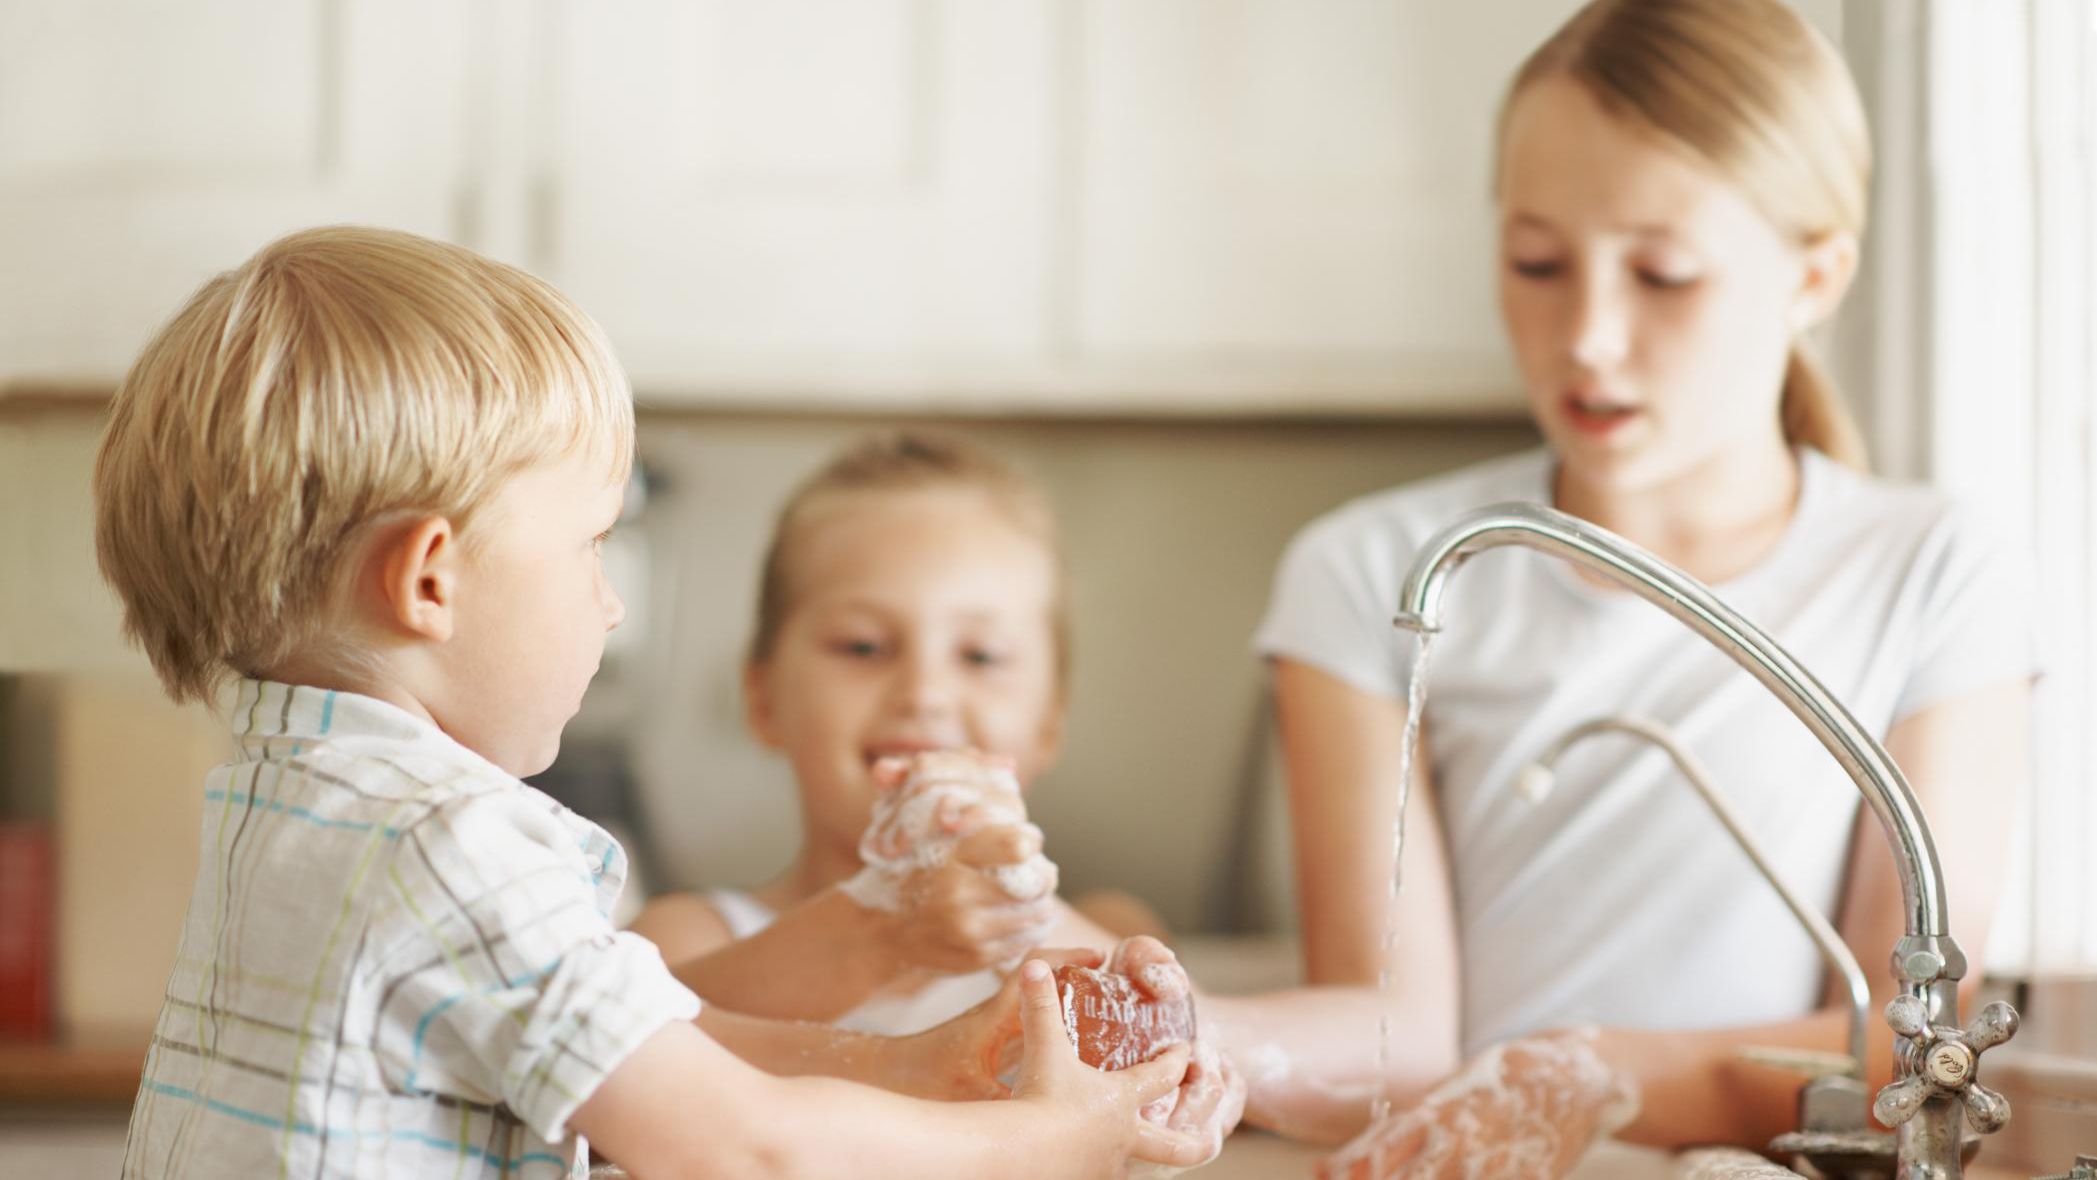 Health and hygiene activities for preschoolers